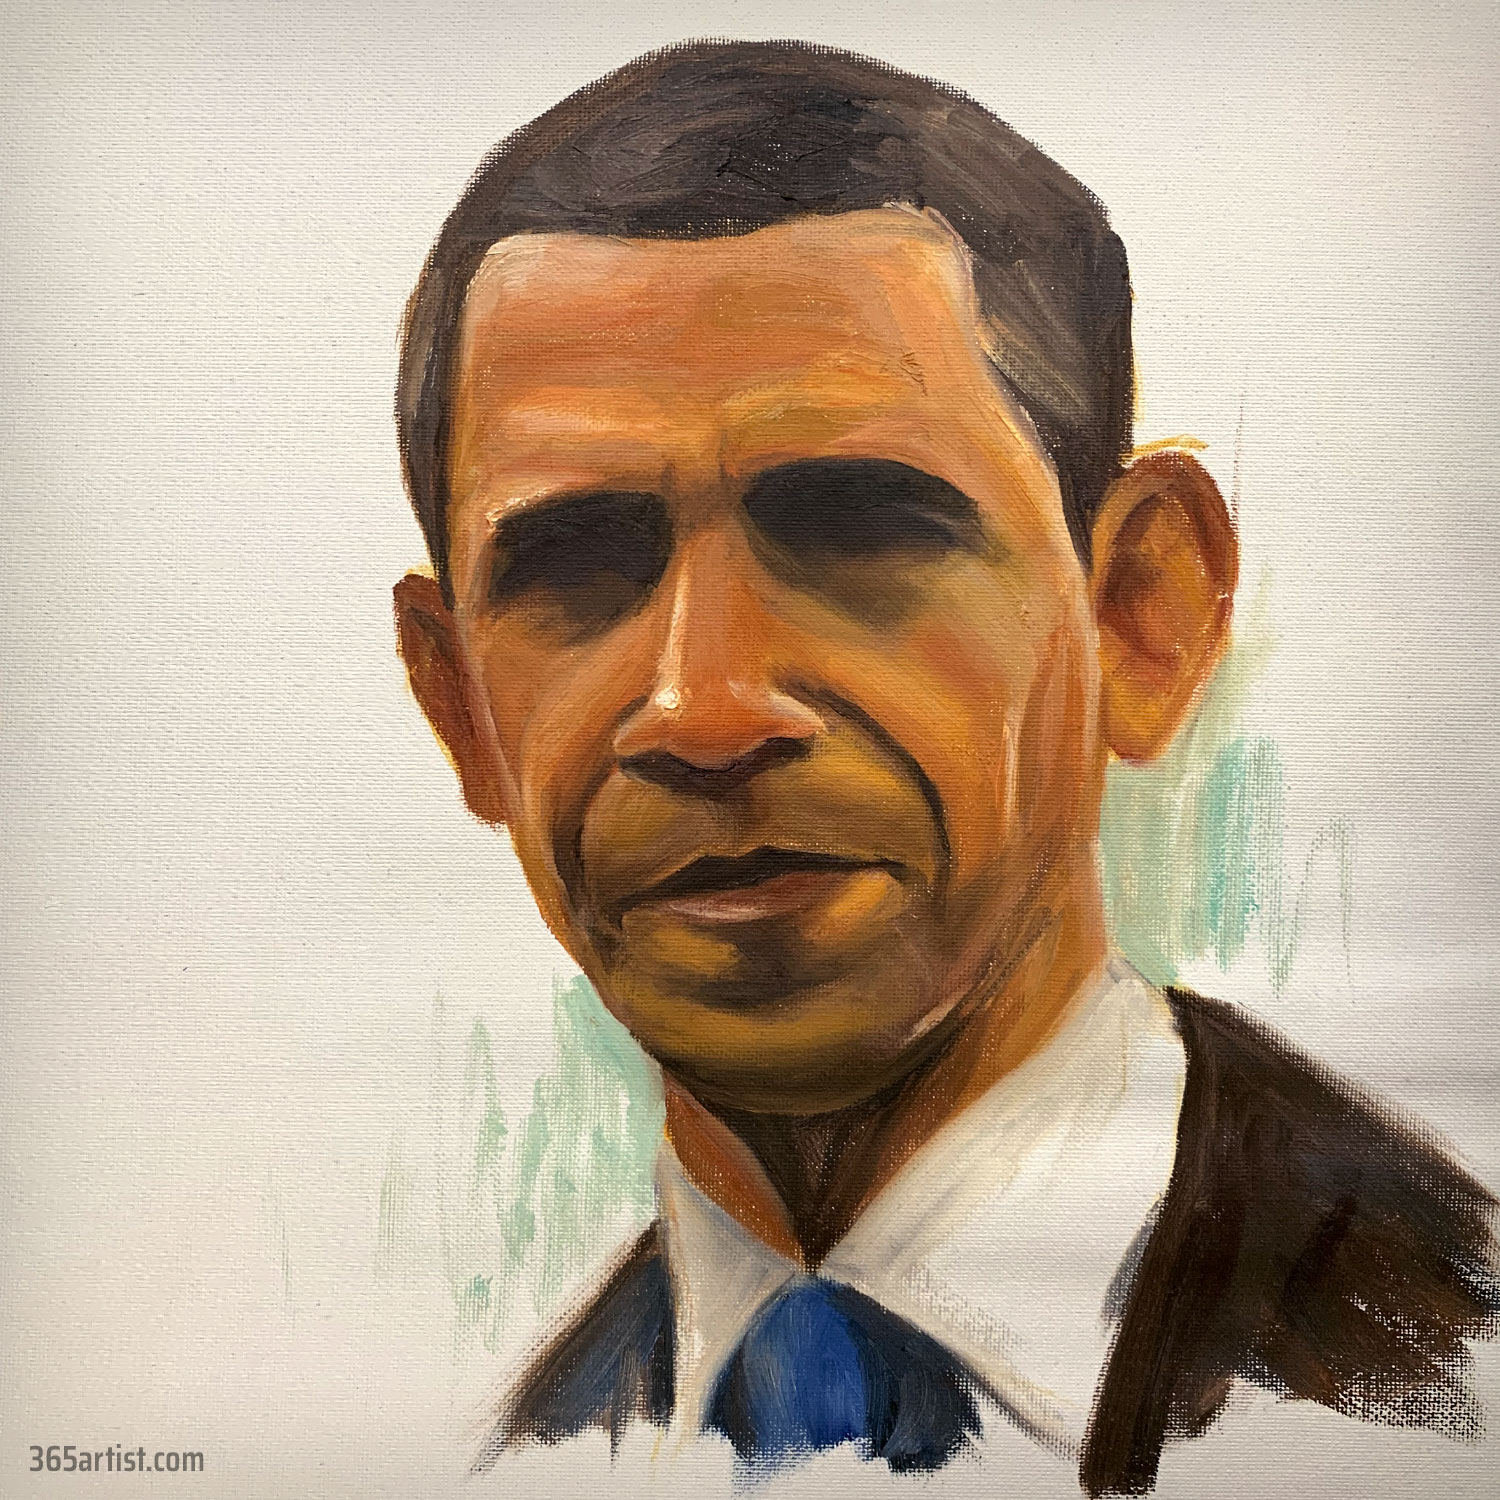 Barack Obama portrait painting